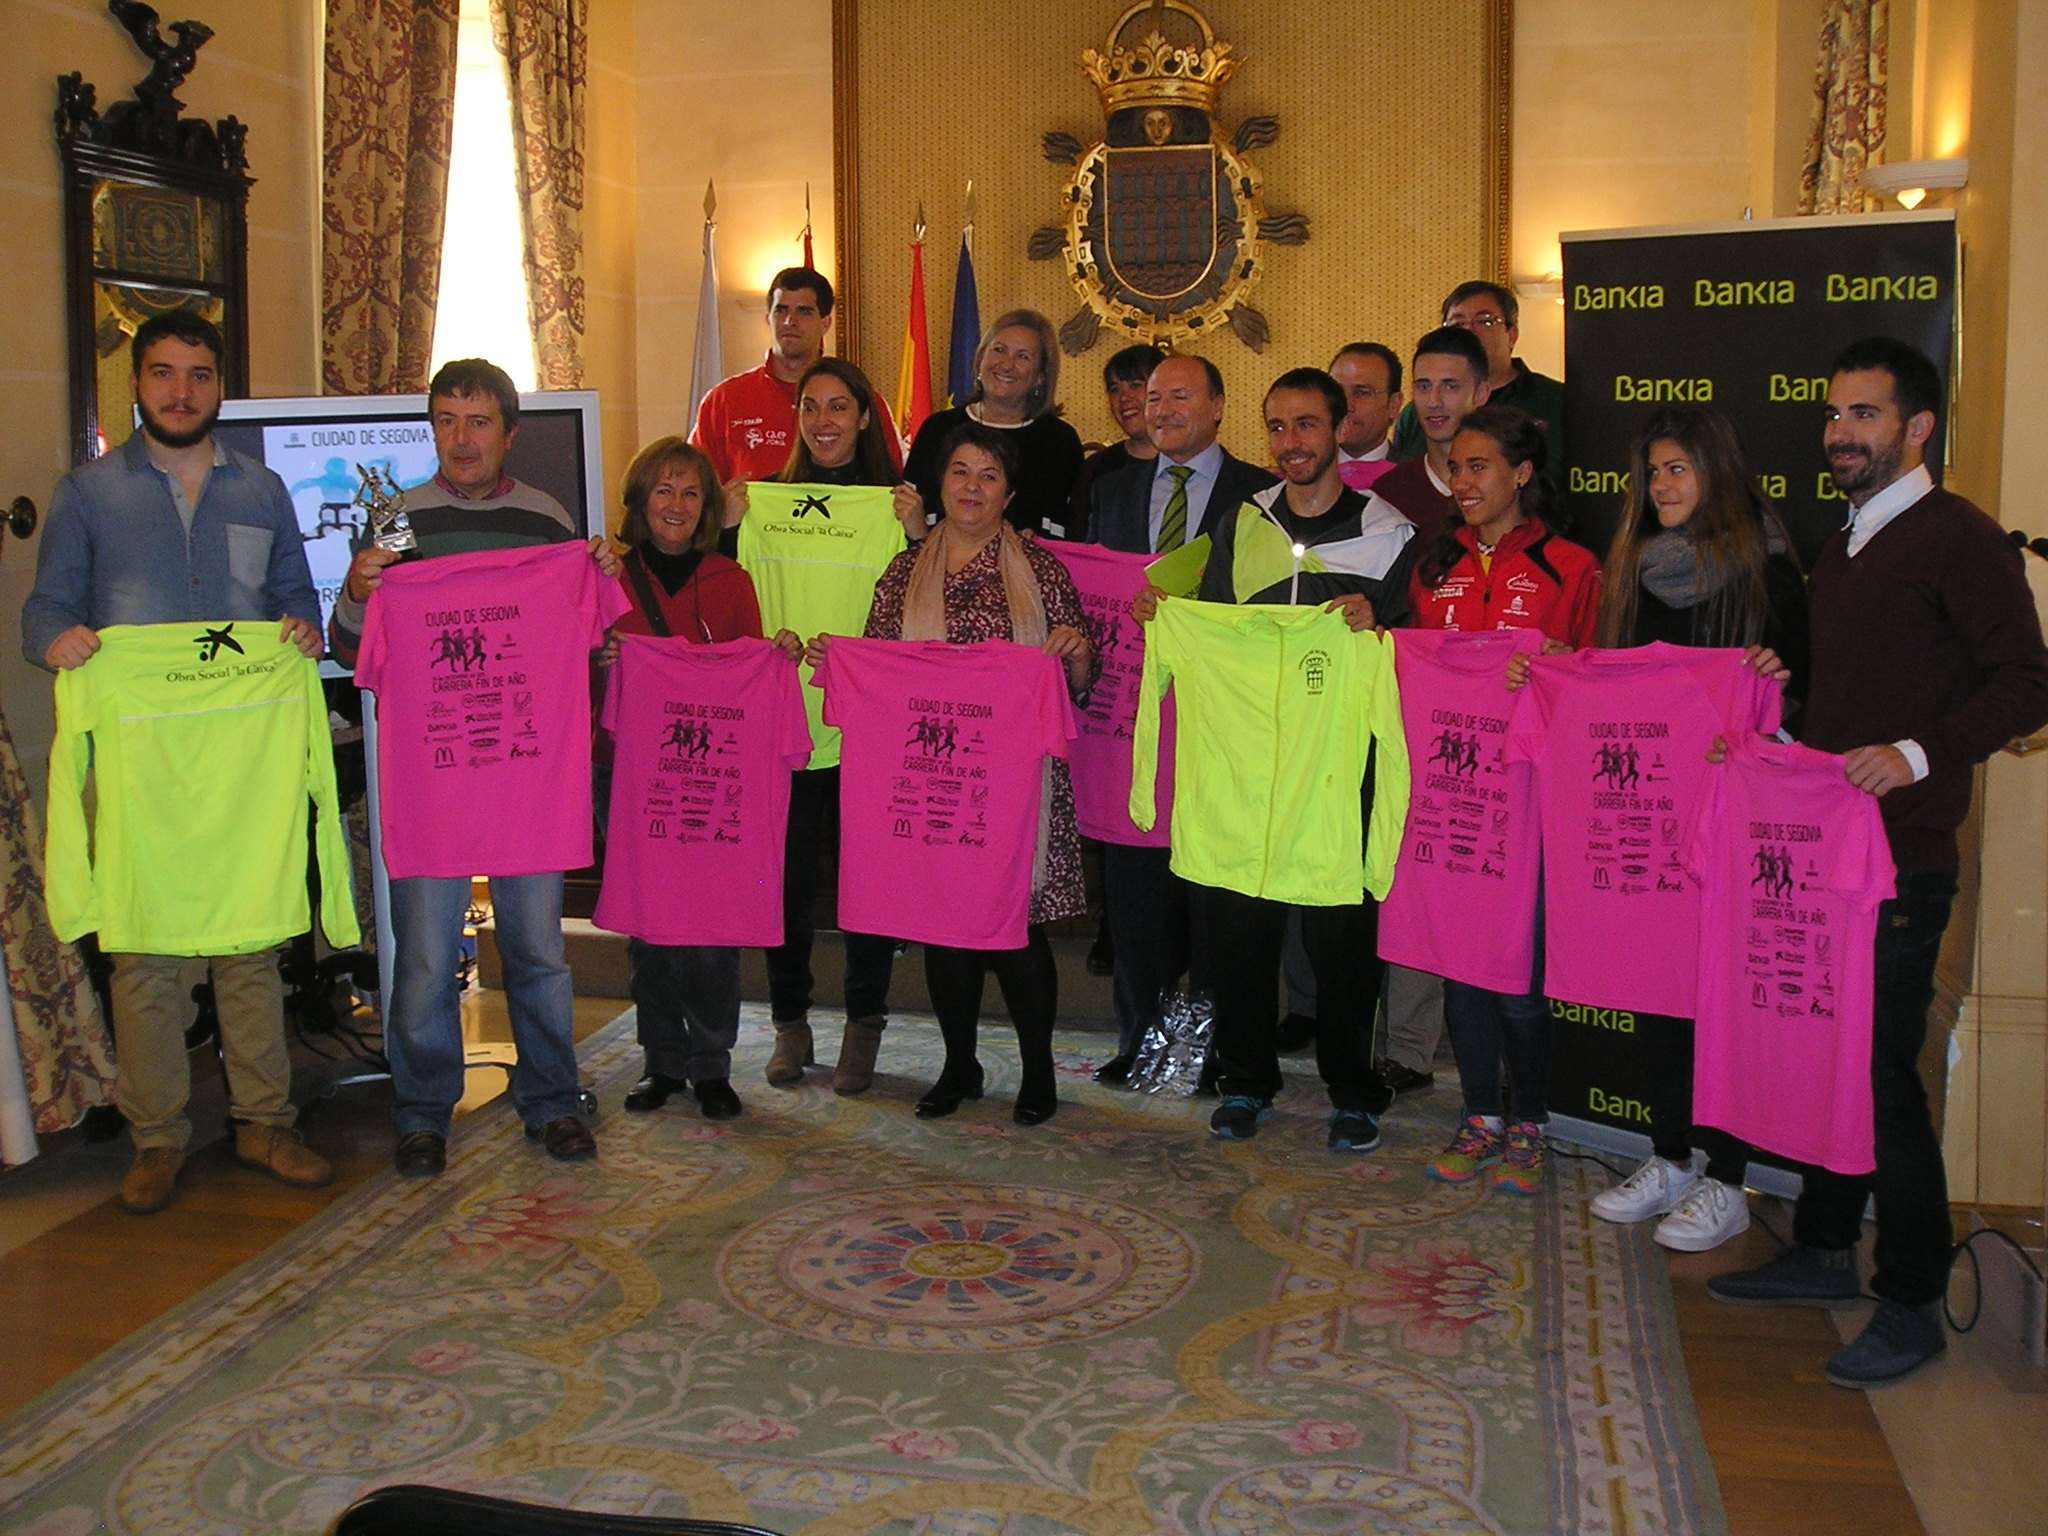 La Carrera Popular Fin de Año “Ciudad de Segovia” 2015 se presenta en sociedad